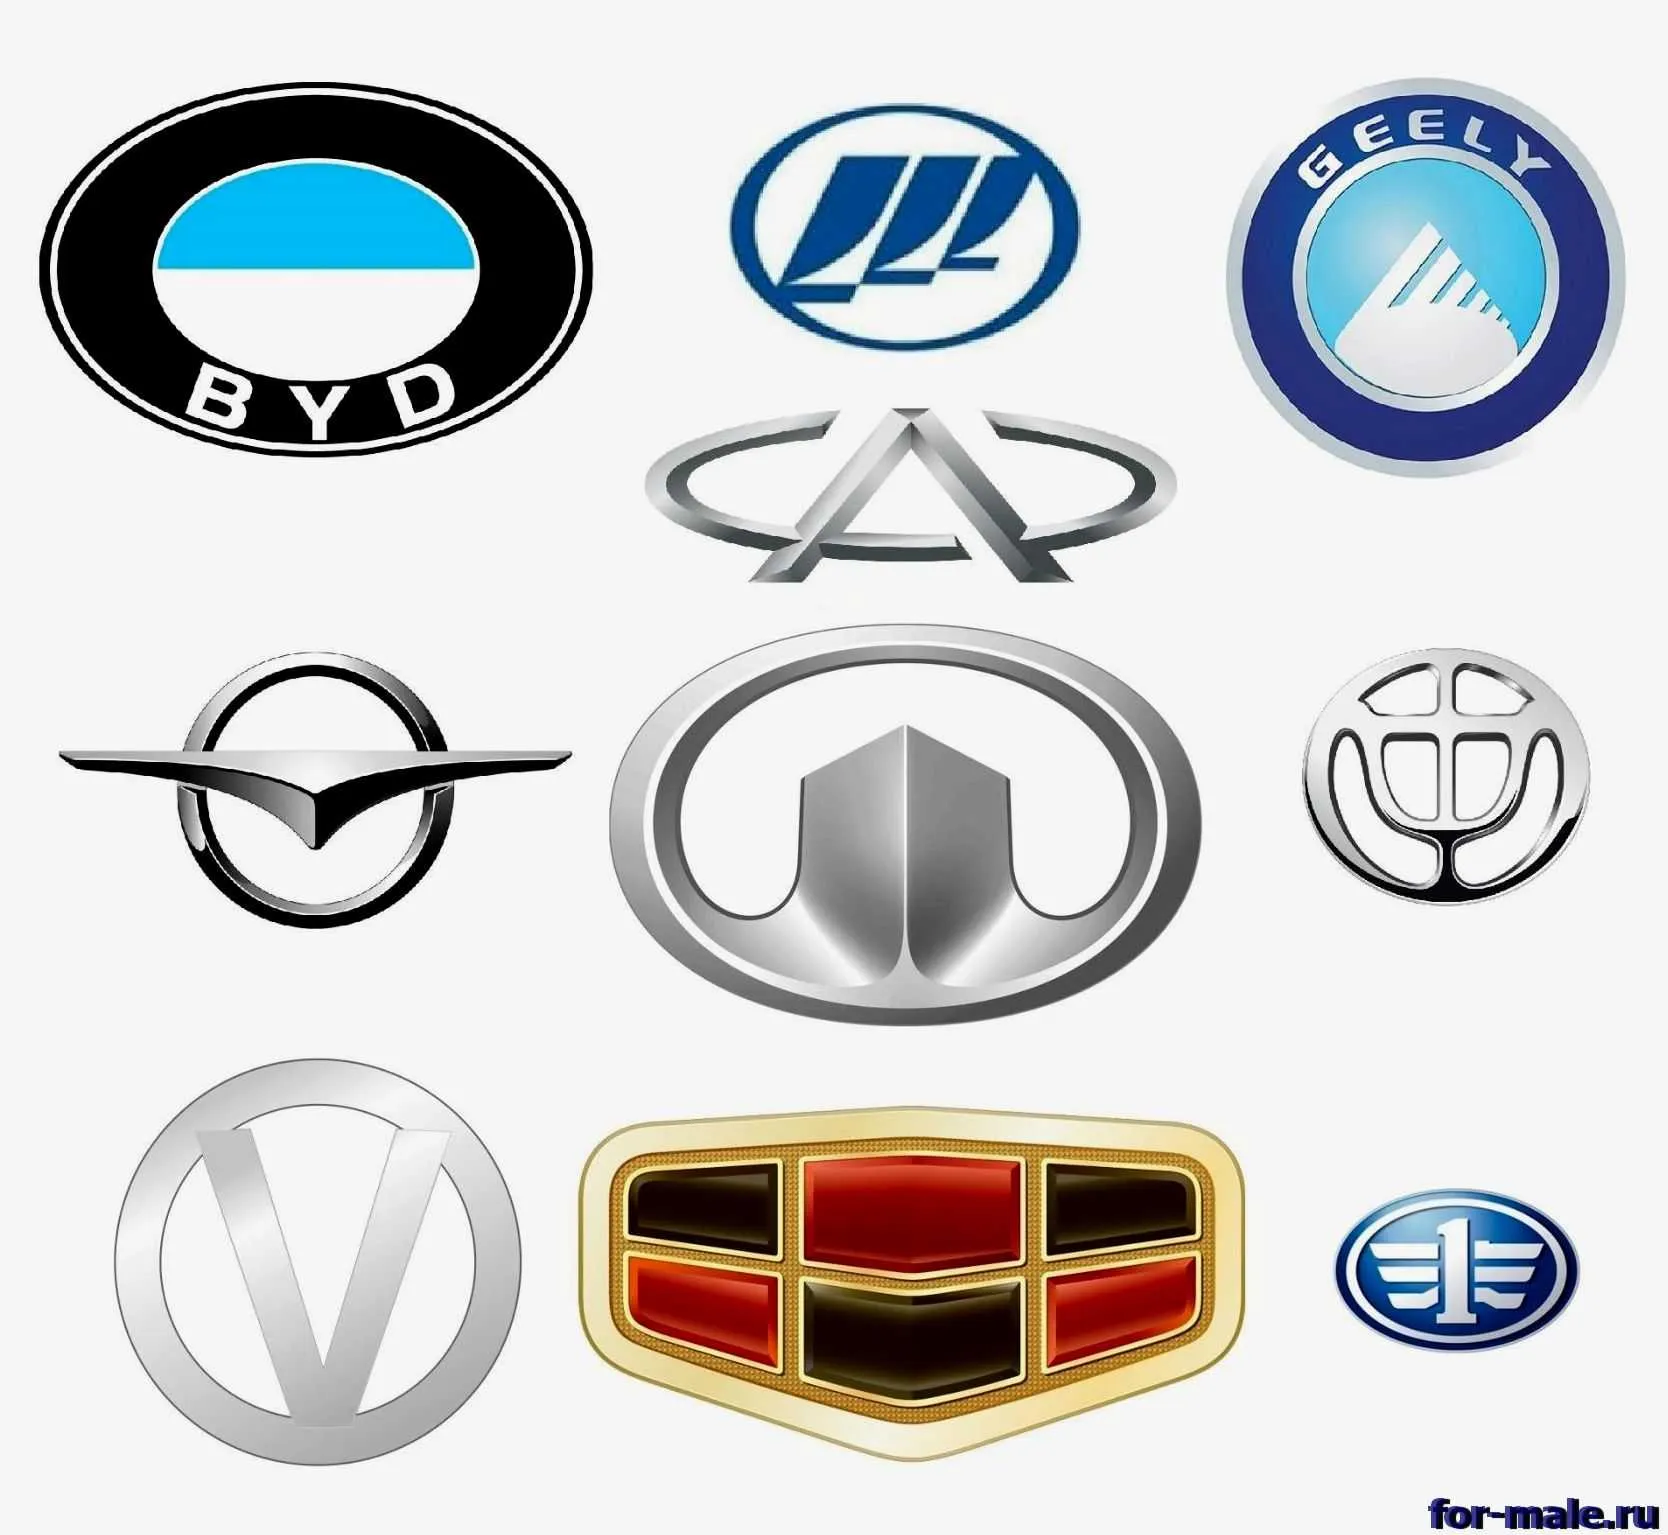 Каталог автомобилей - все марки машин, модели и поколения в каталоге автомобилей - Авто вторсырье-м.рф